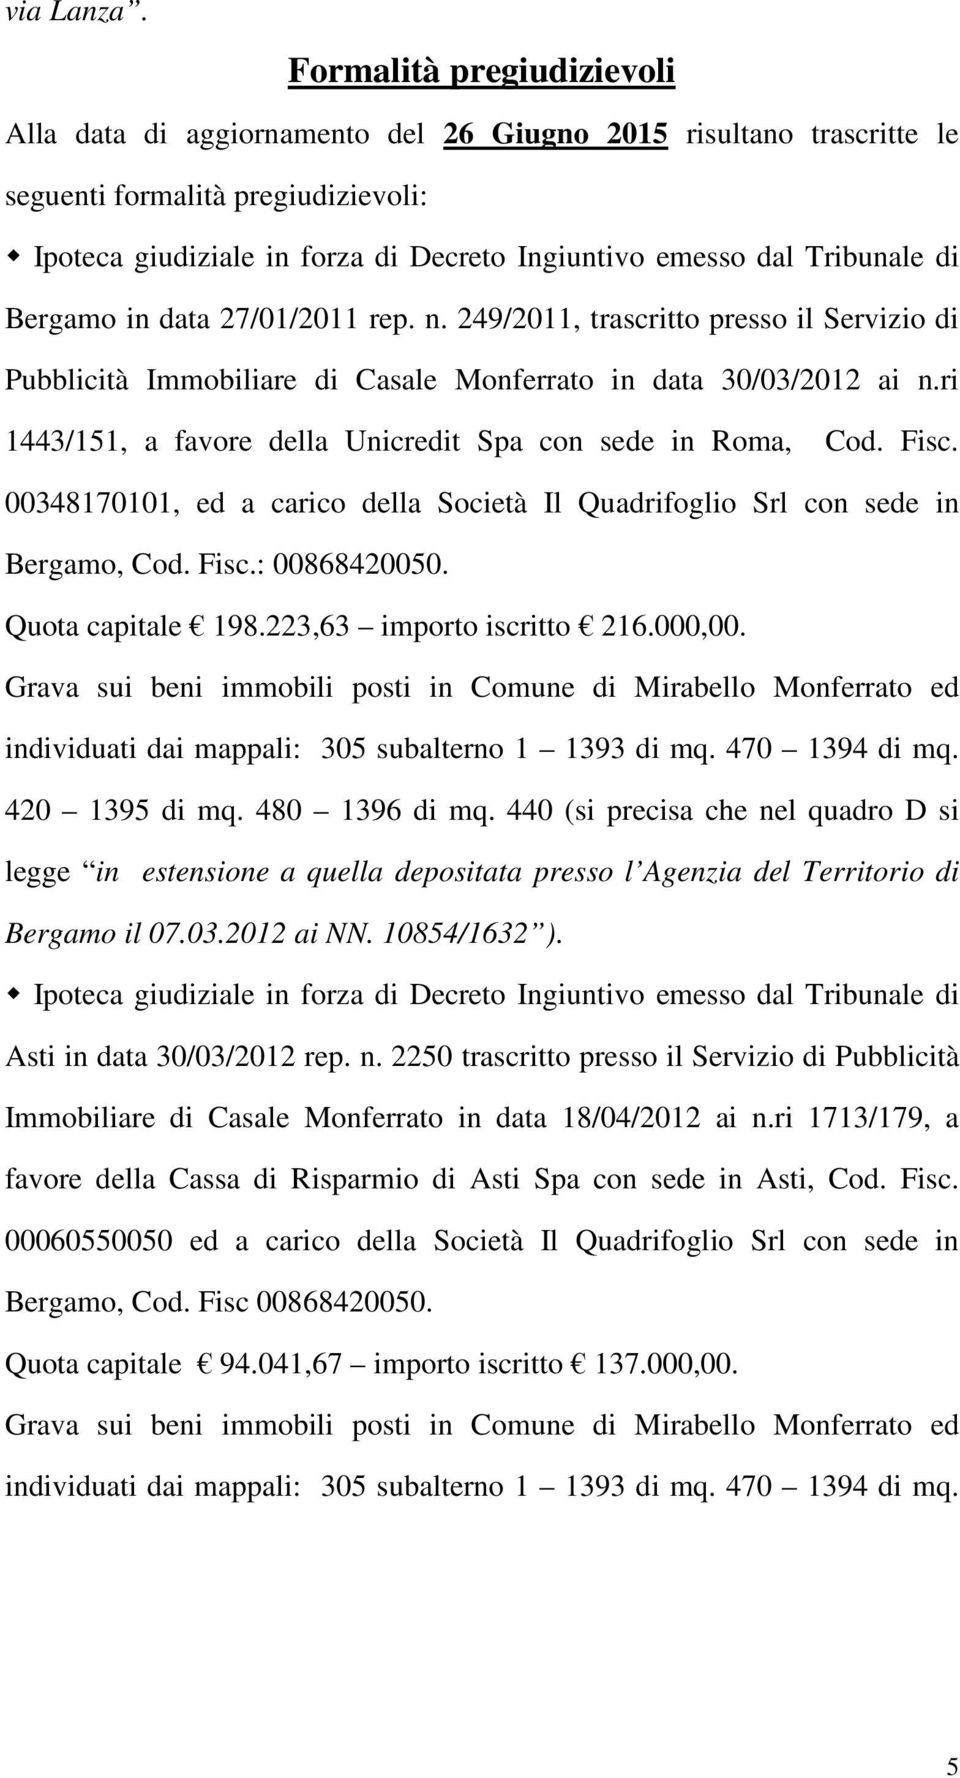 Tribunale di Bergamo in data 27/01/2011 rep. n. 249/2011, trascritto presso il Servizio di Pubblicità Immobiliare di Casale Monferrato in data 30/03/2012 ai n.